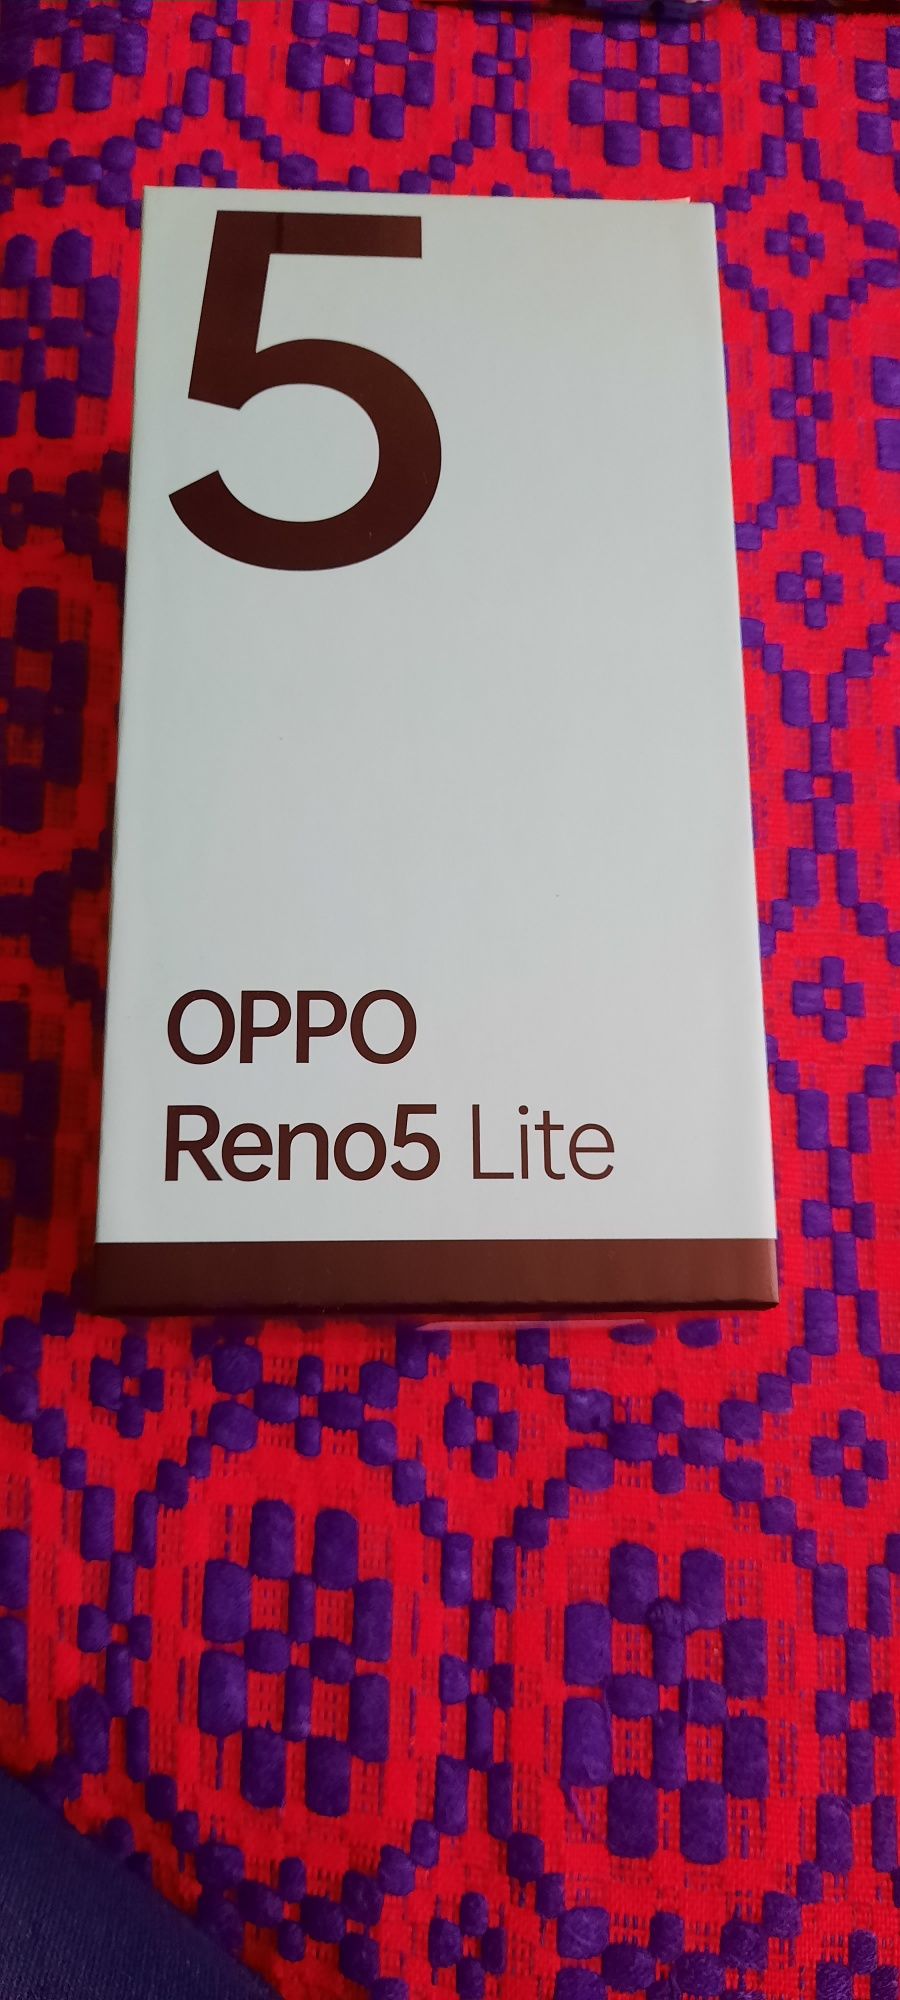 Telefon Oppo Reno 5 Lite Purple